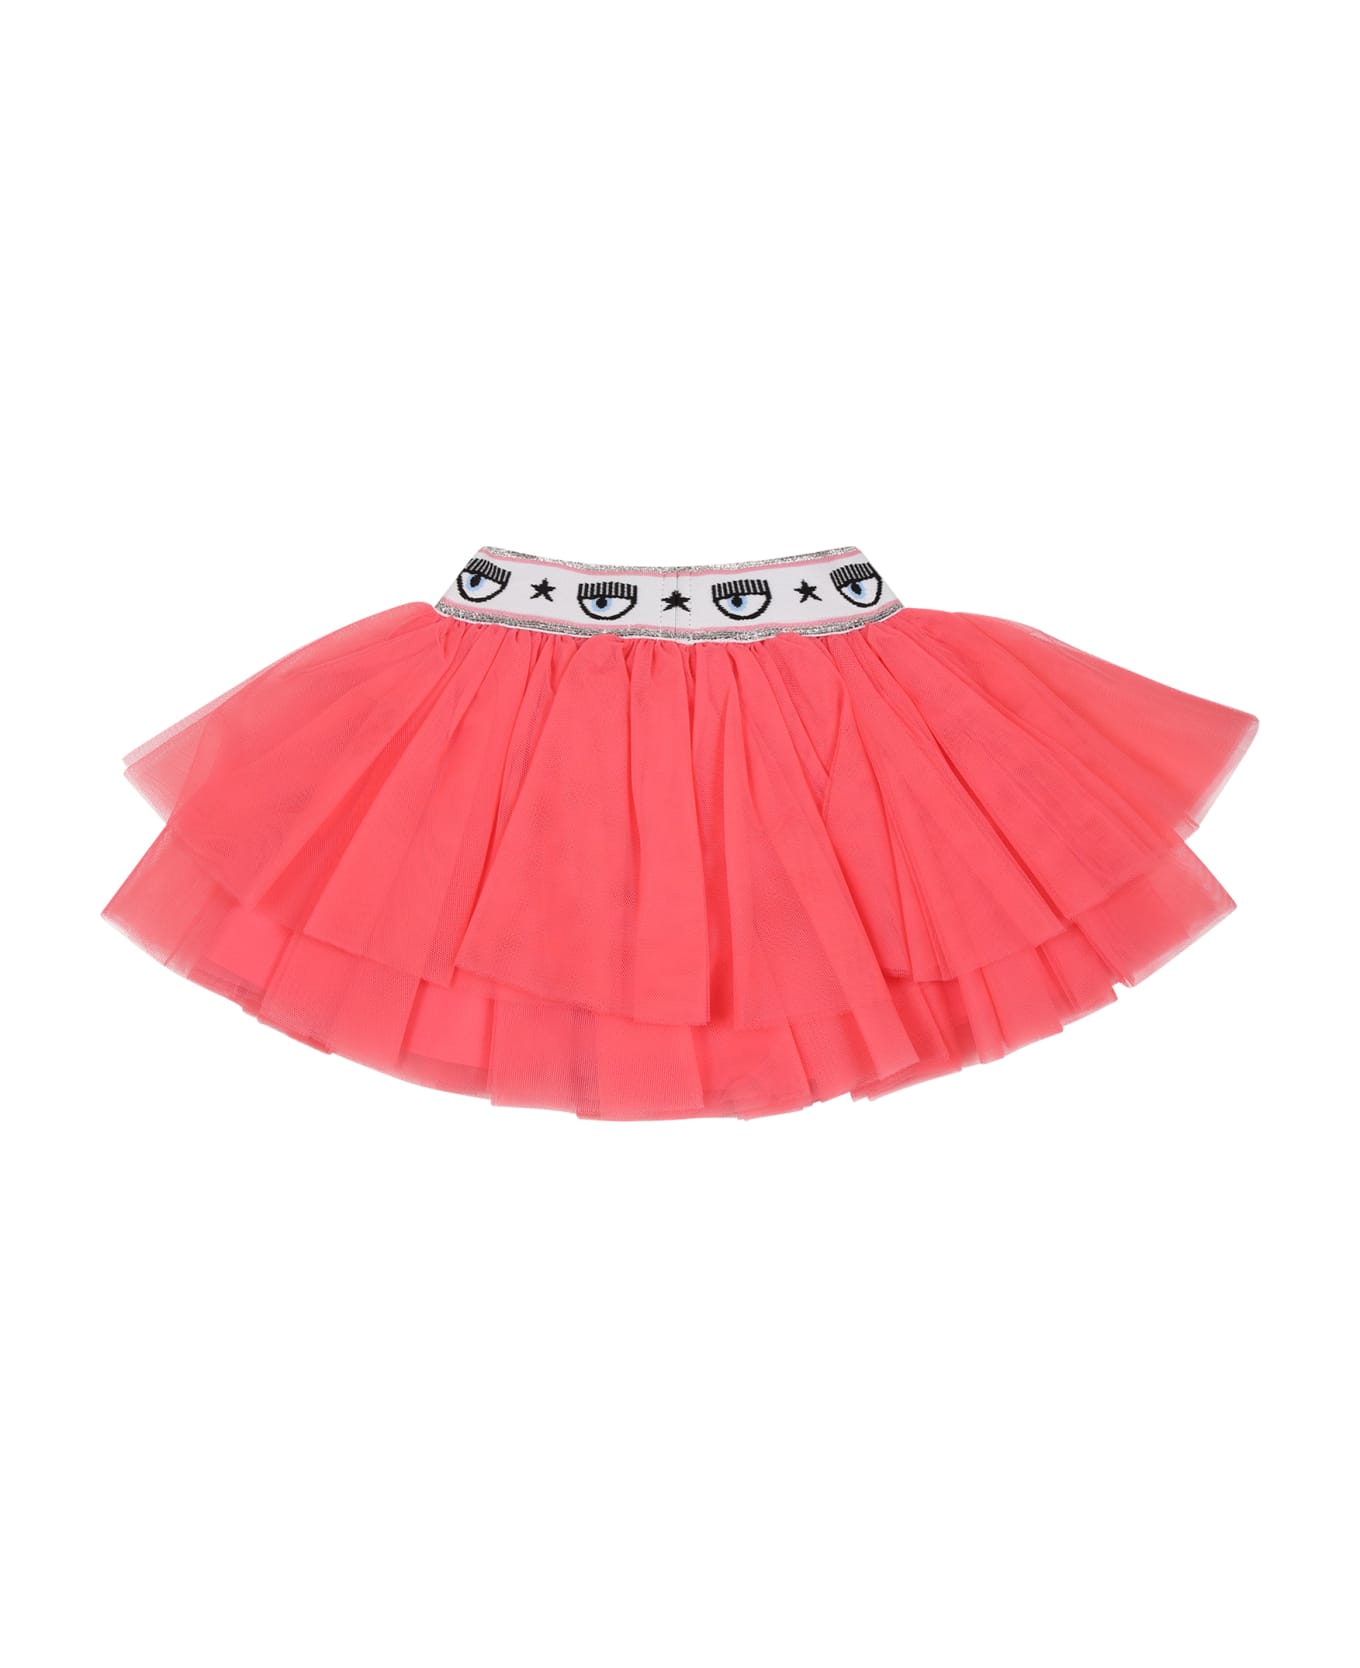 Chiara Ferragni Pink Skirt For Baby Girl With Eyestar - Pink